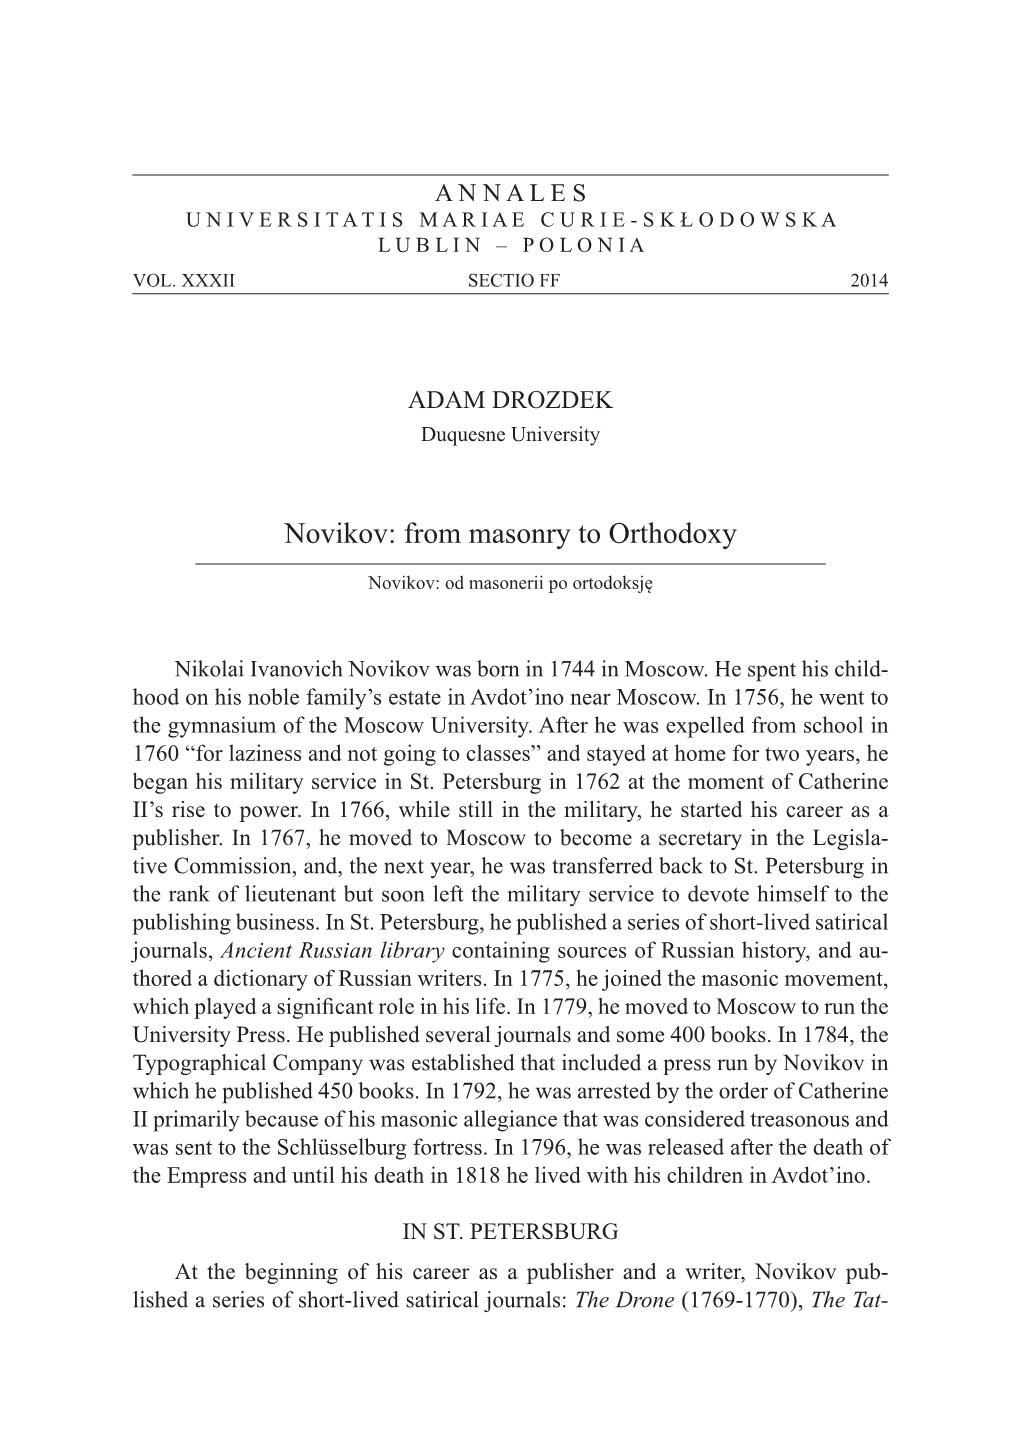 Novikov: from Masonry to Orthodoxy